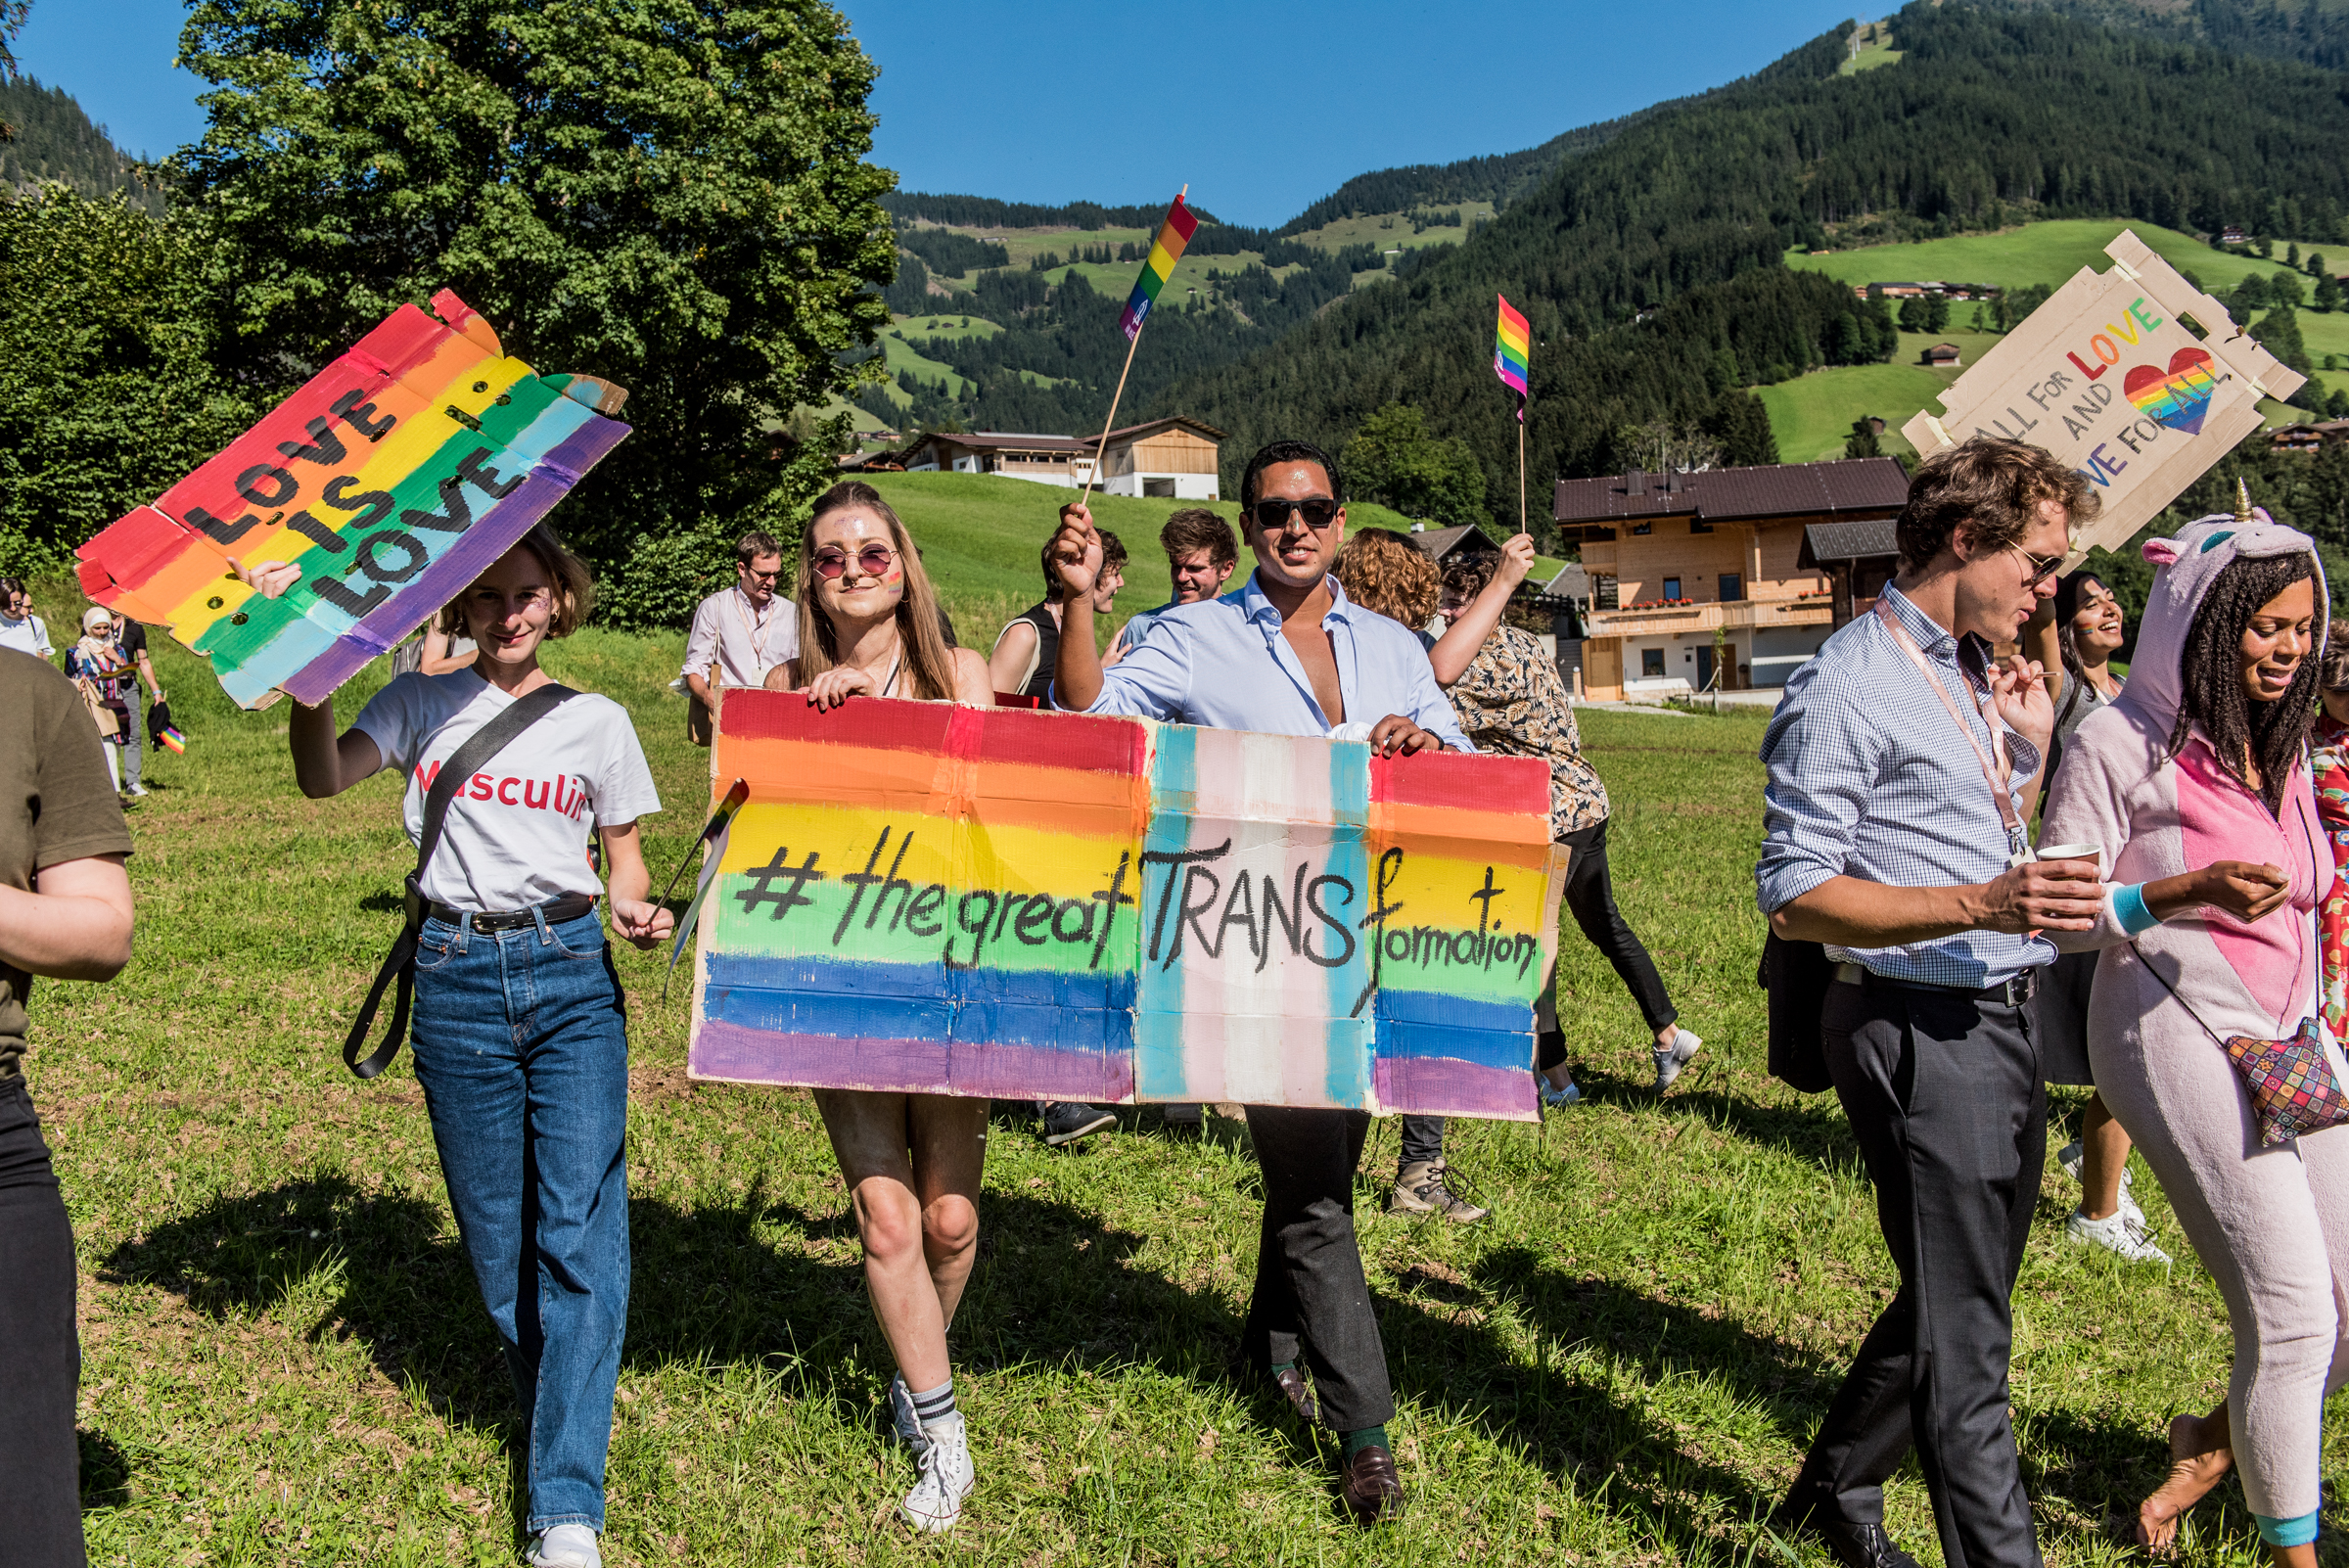 Alpbach Pride 2021 by Tobias Neugebauer